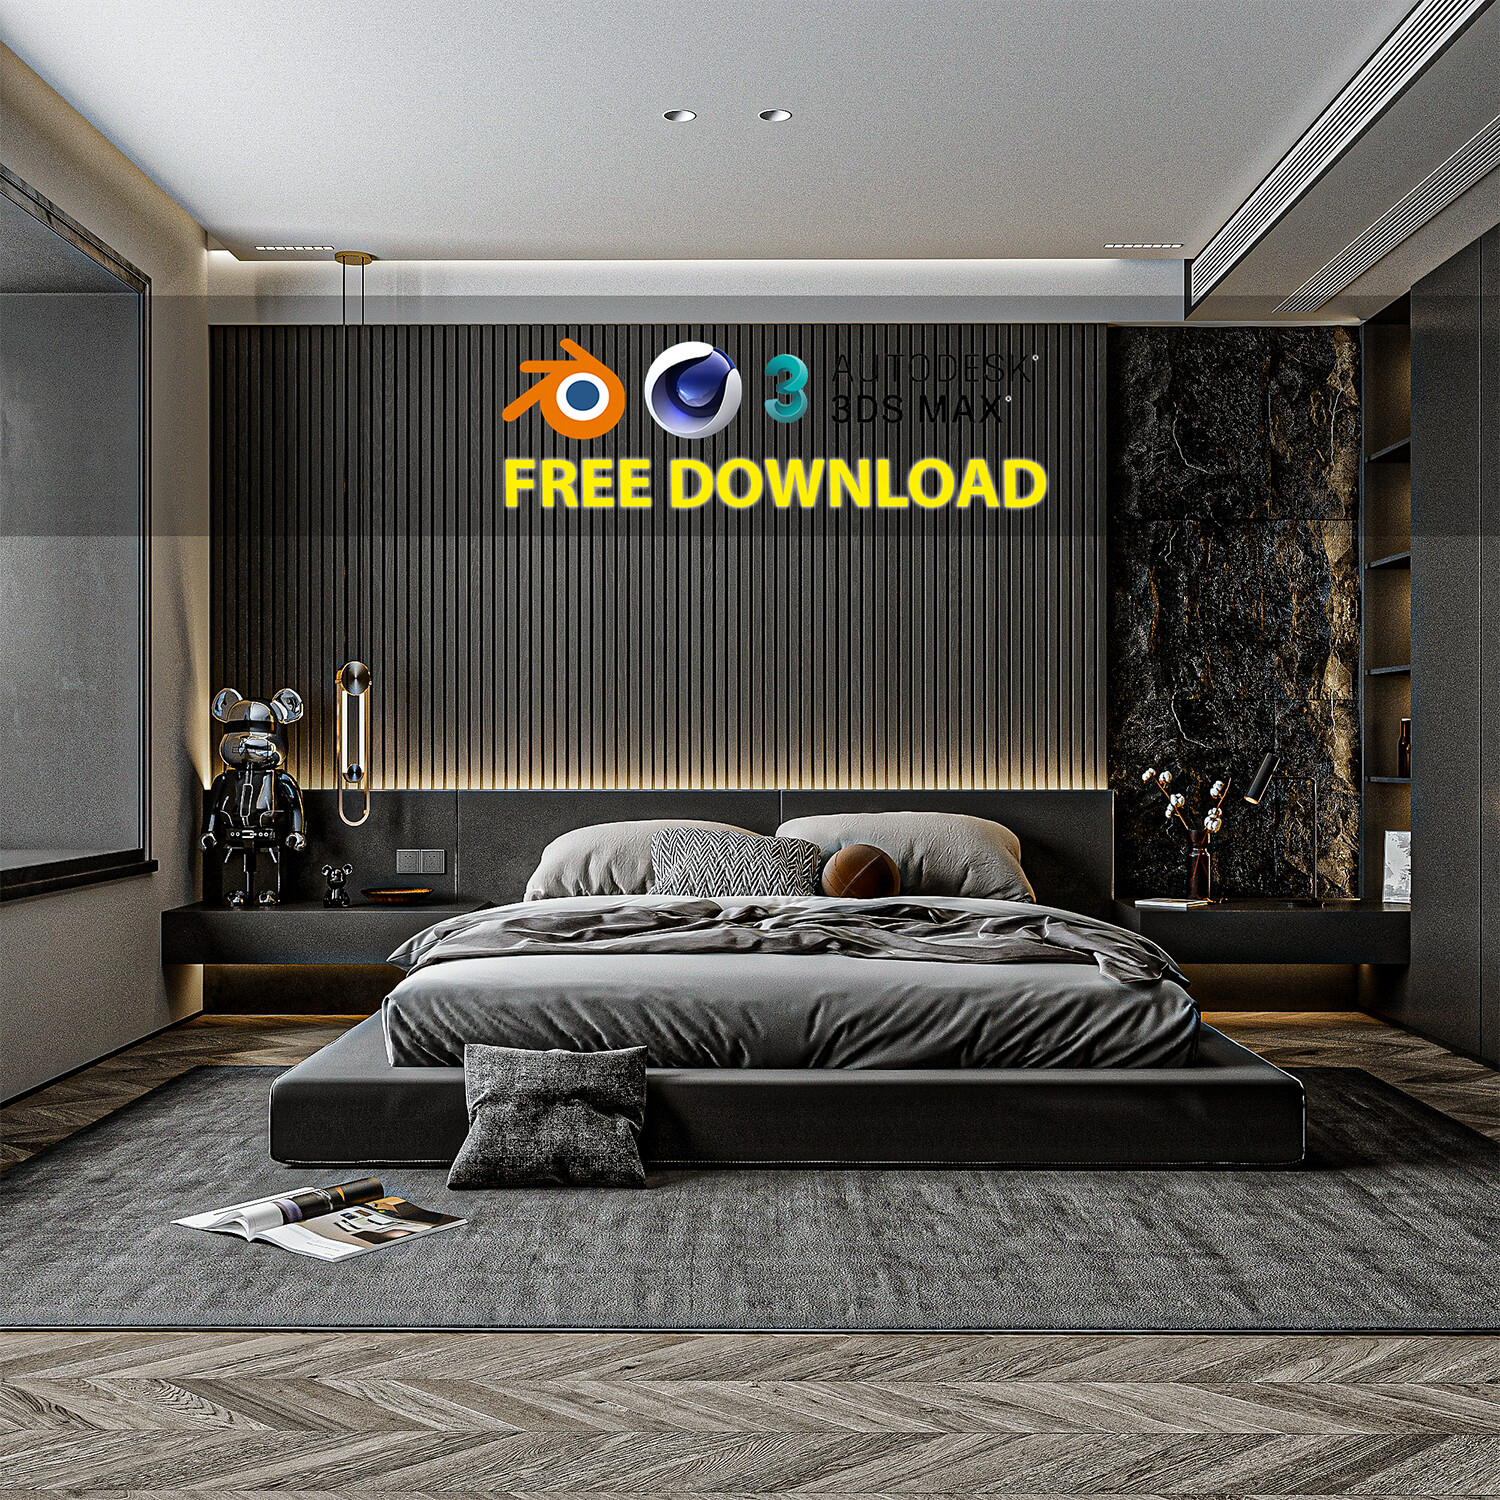 Black modern bedroom - Free Download ( 3Ds MAX - Blender - Cinema4D - FBX - OBJ )